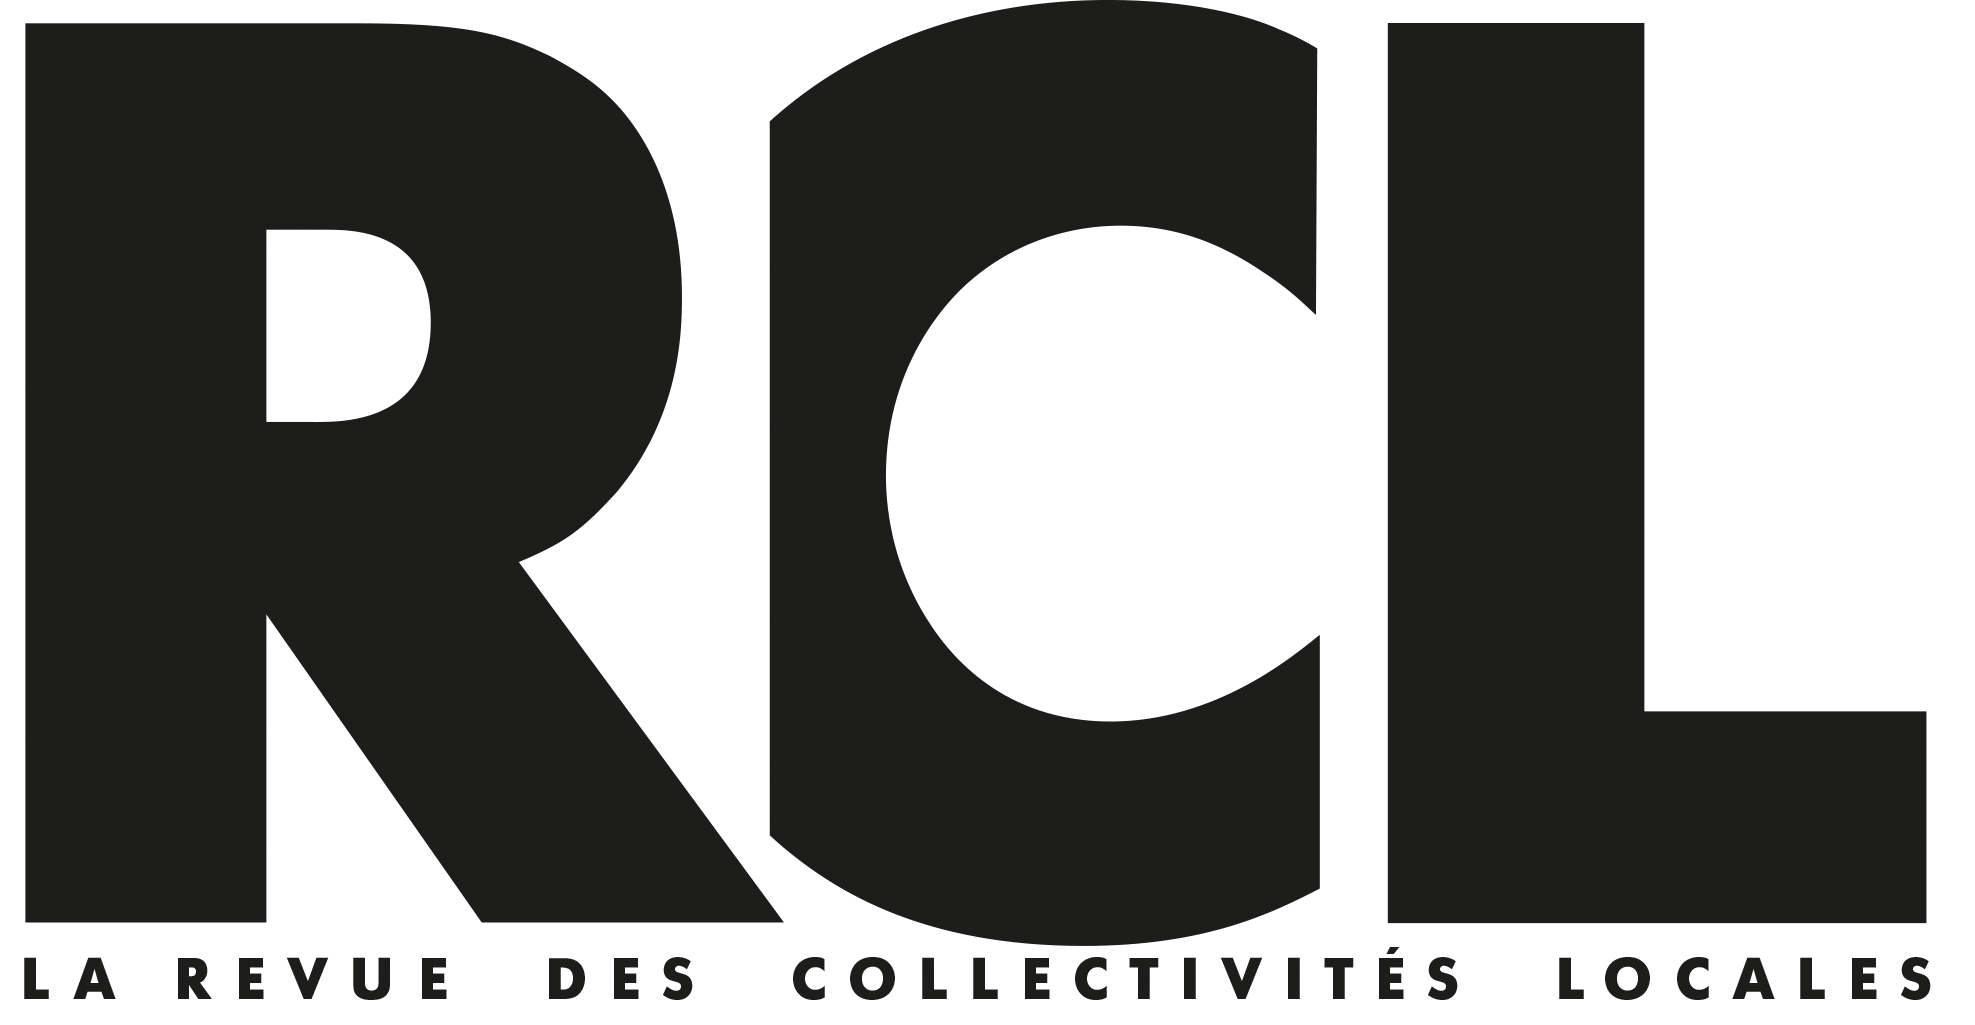 RCL - La Revue des collectivités locales est la marque media de référence pour l’équipement des collectivités locales.